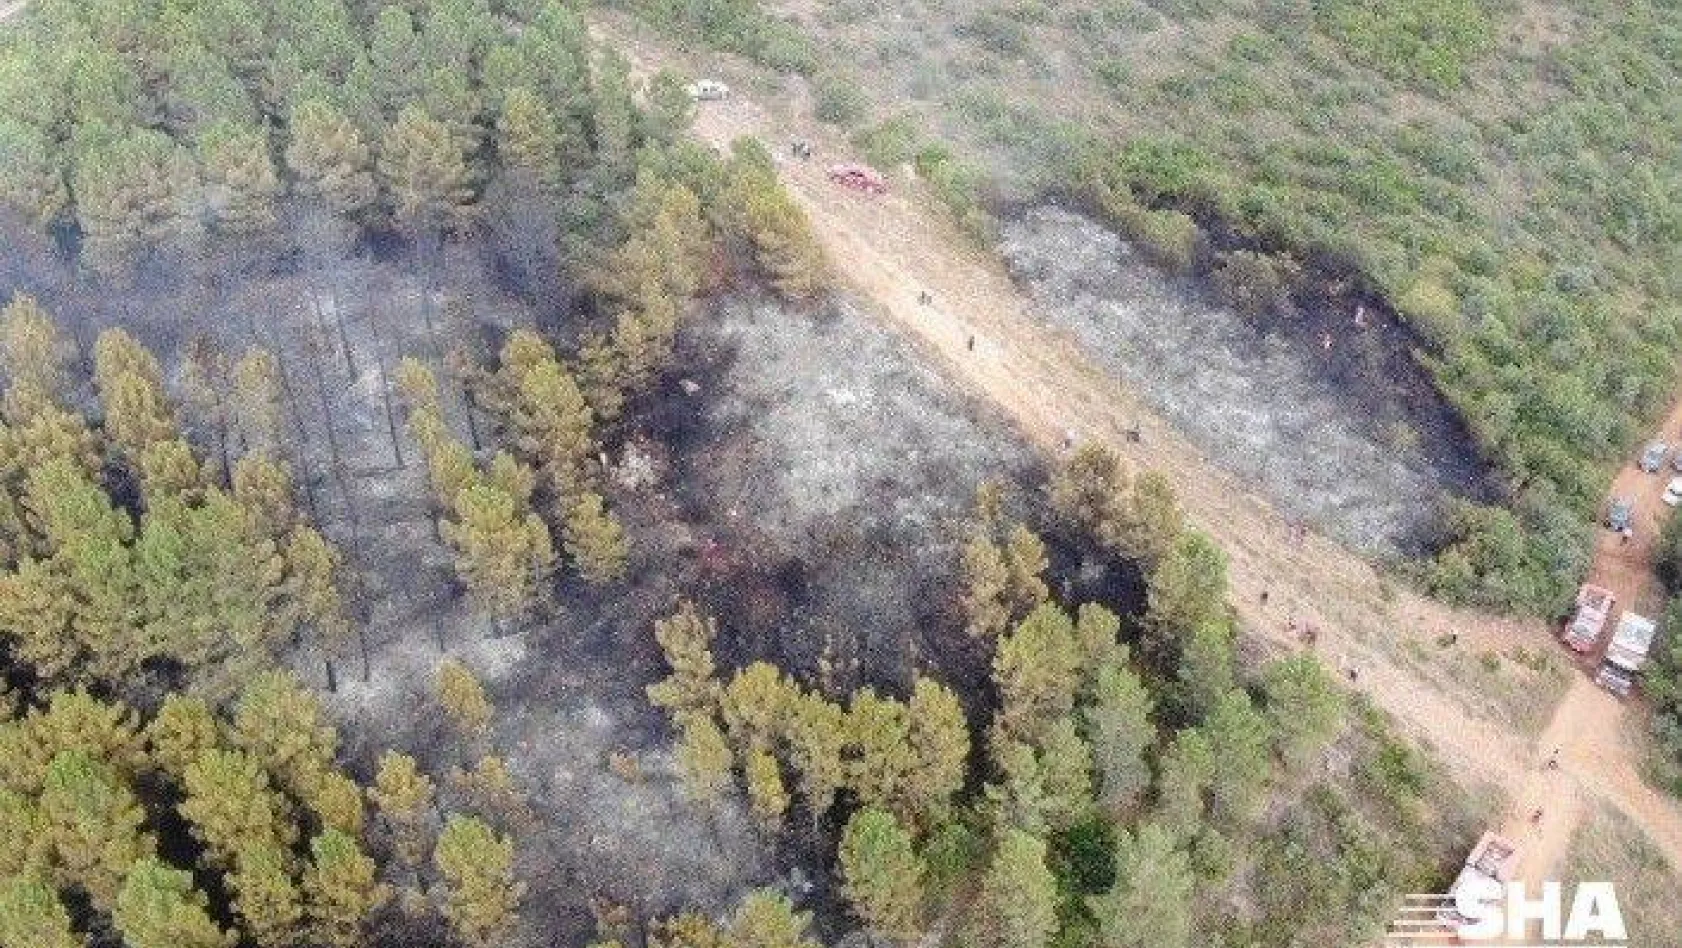 İstanbul'da Aydos Ormanı'nda çıkan yangın kontrol altına alındı